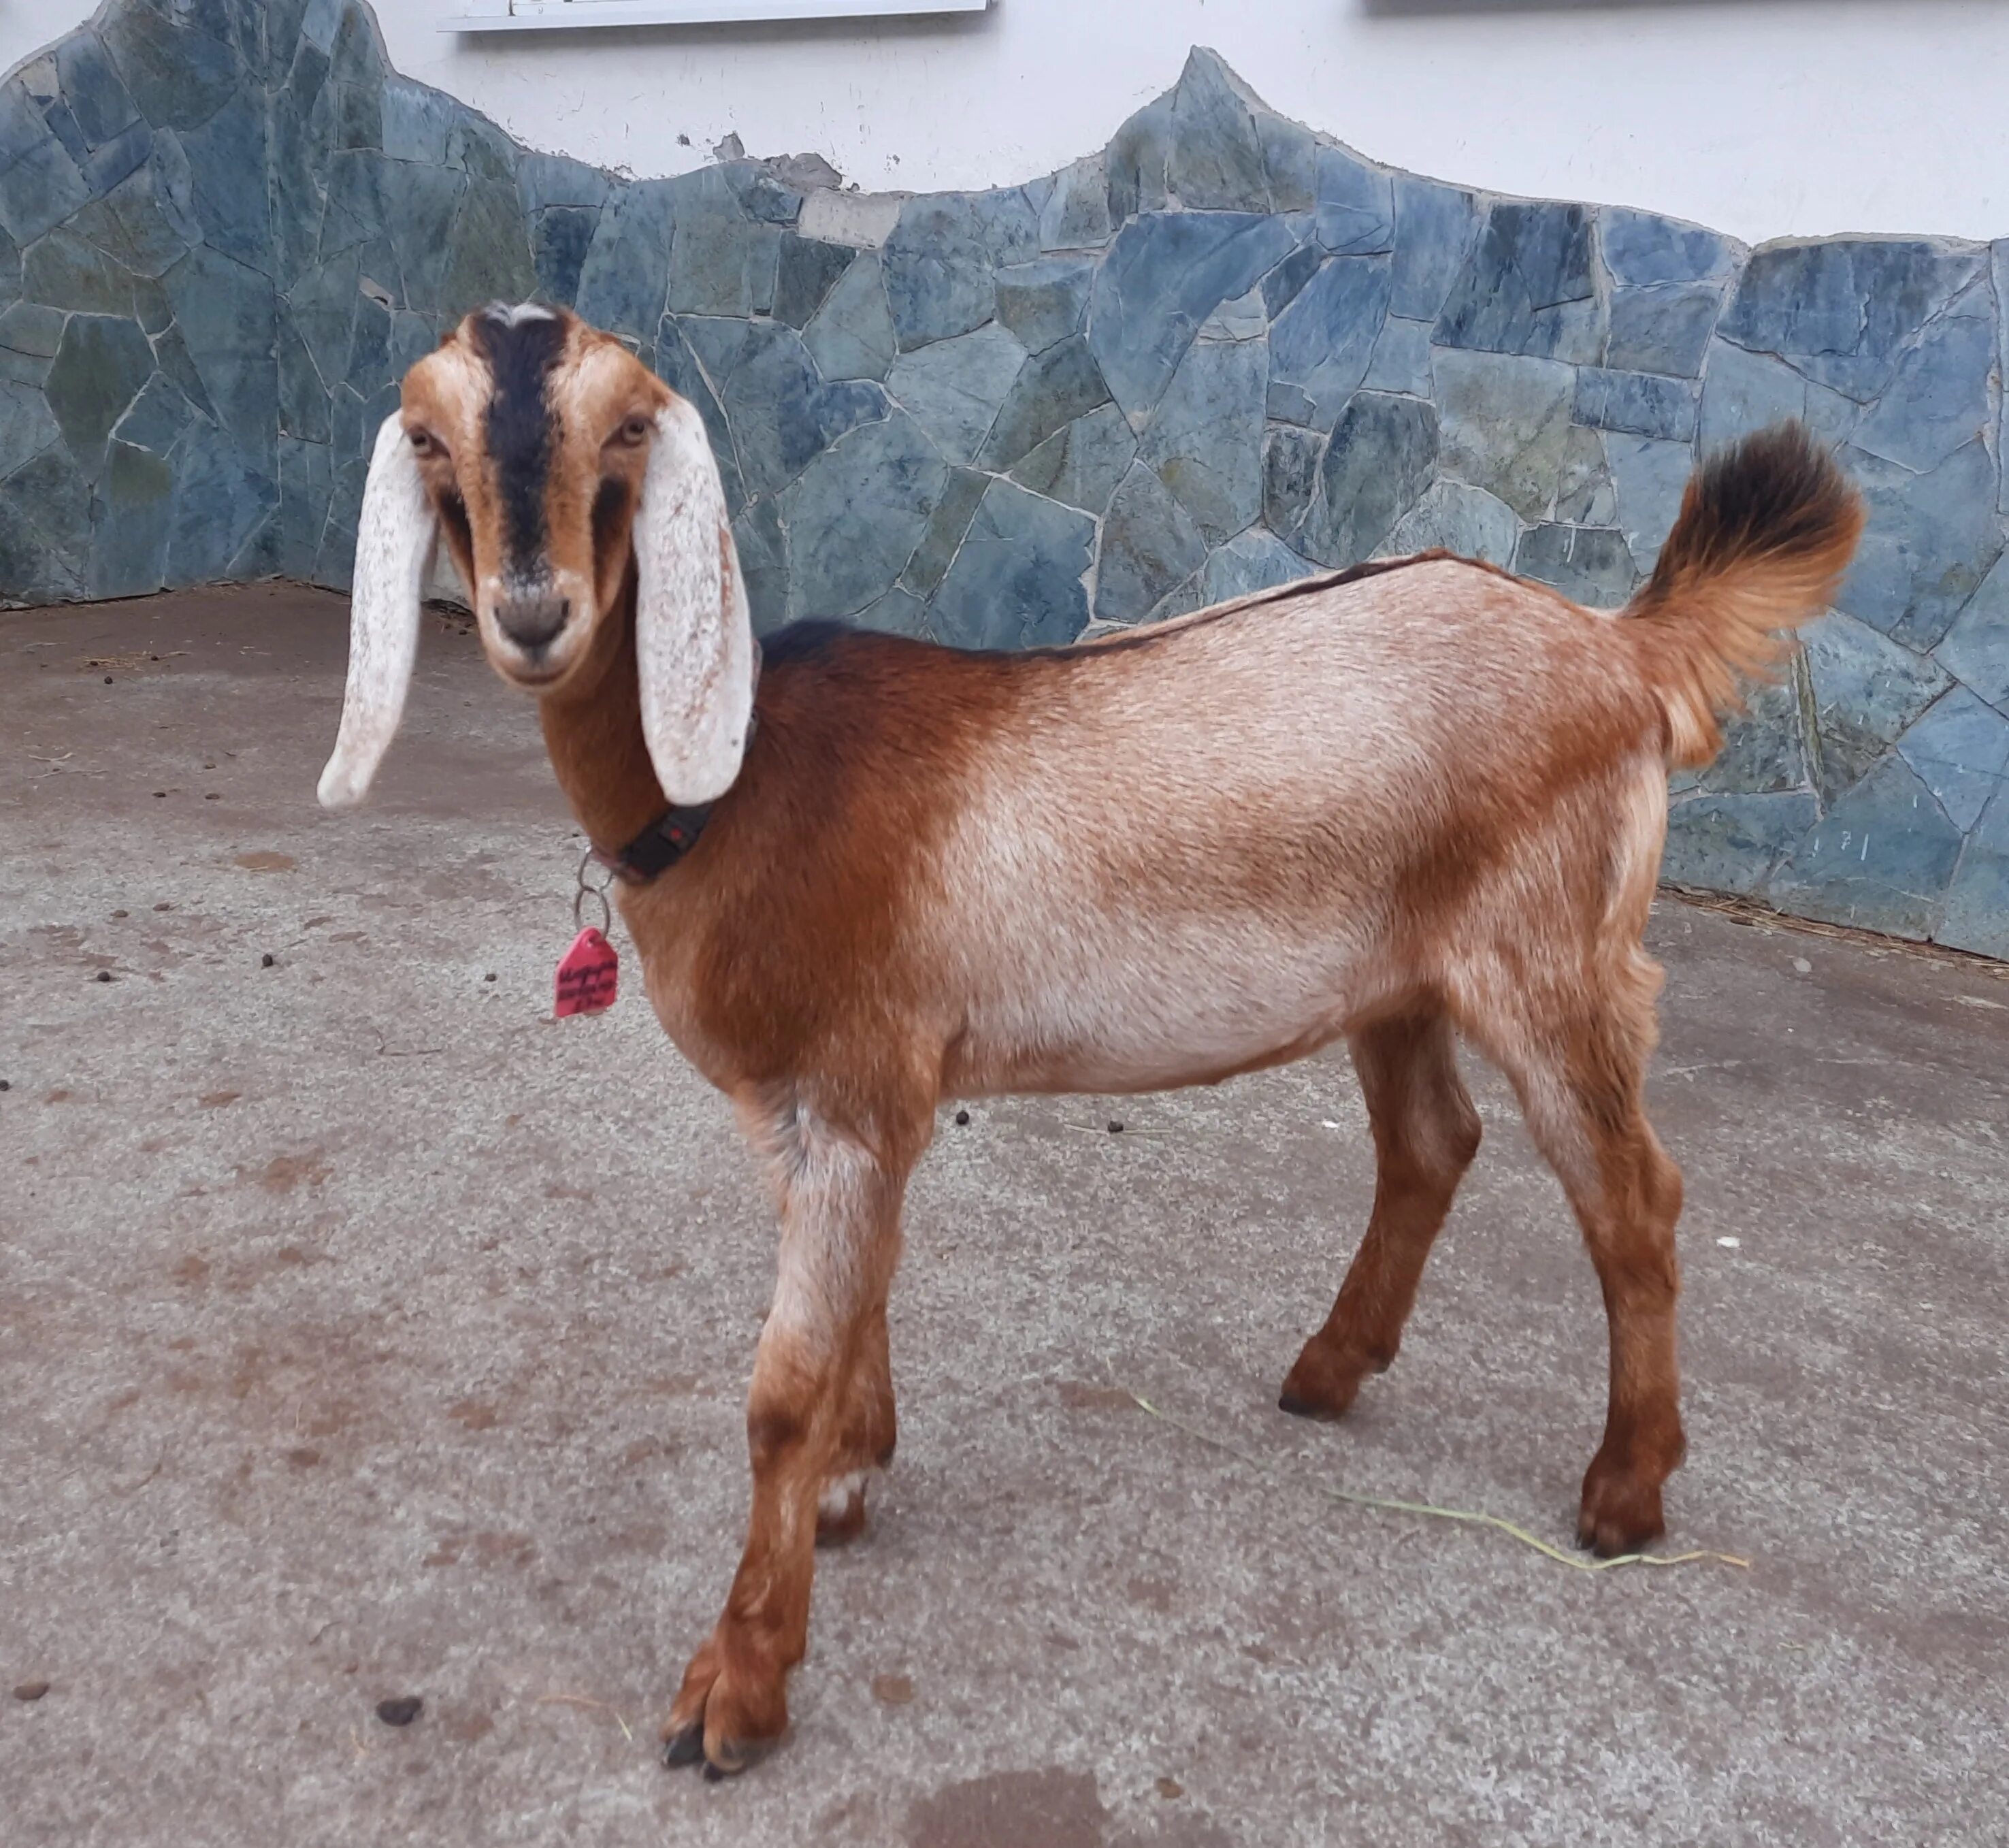 Ушами порода козы. Козы англо-нубийской породы. Битал козы. Коза с длинными ушами порода. Камерунские козы.